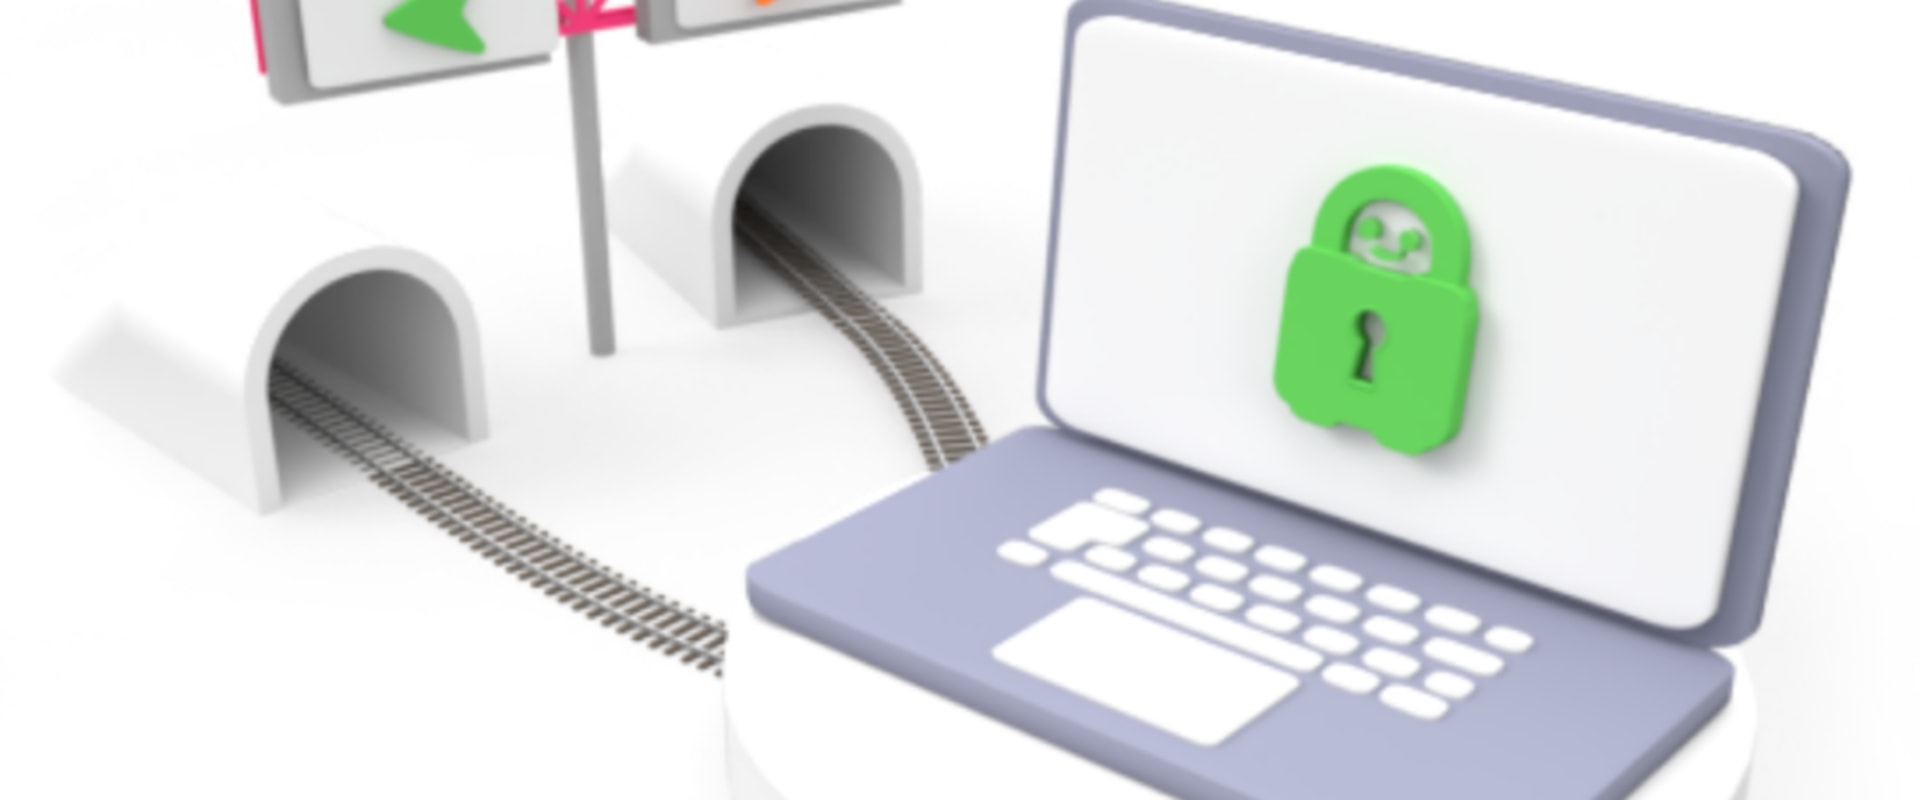 Split Tunneling: Understanding Network Security Features